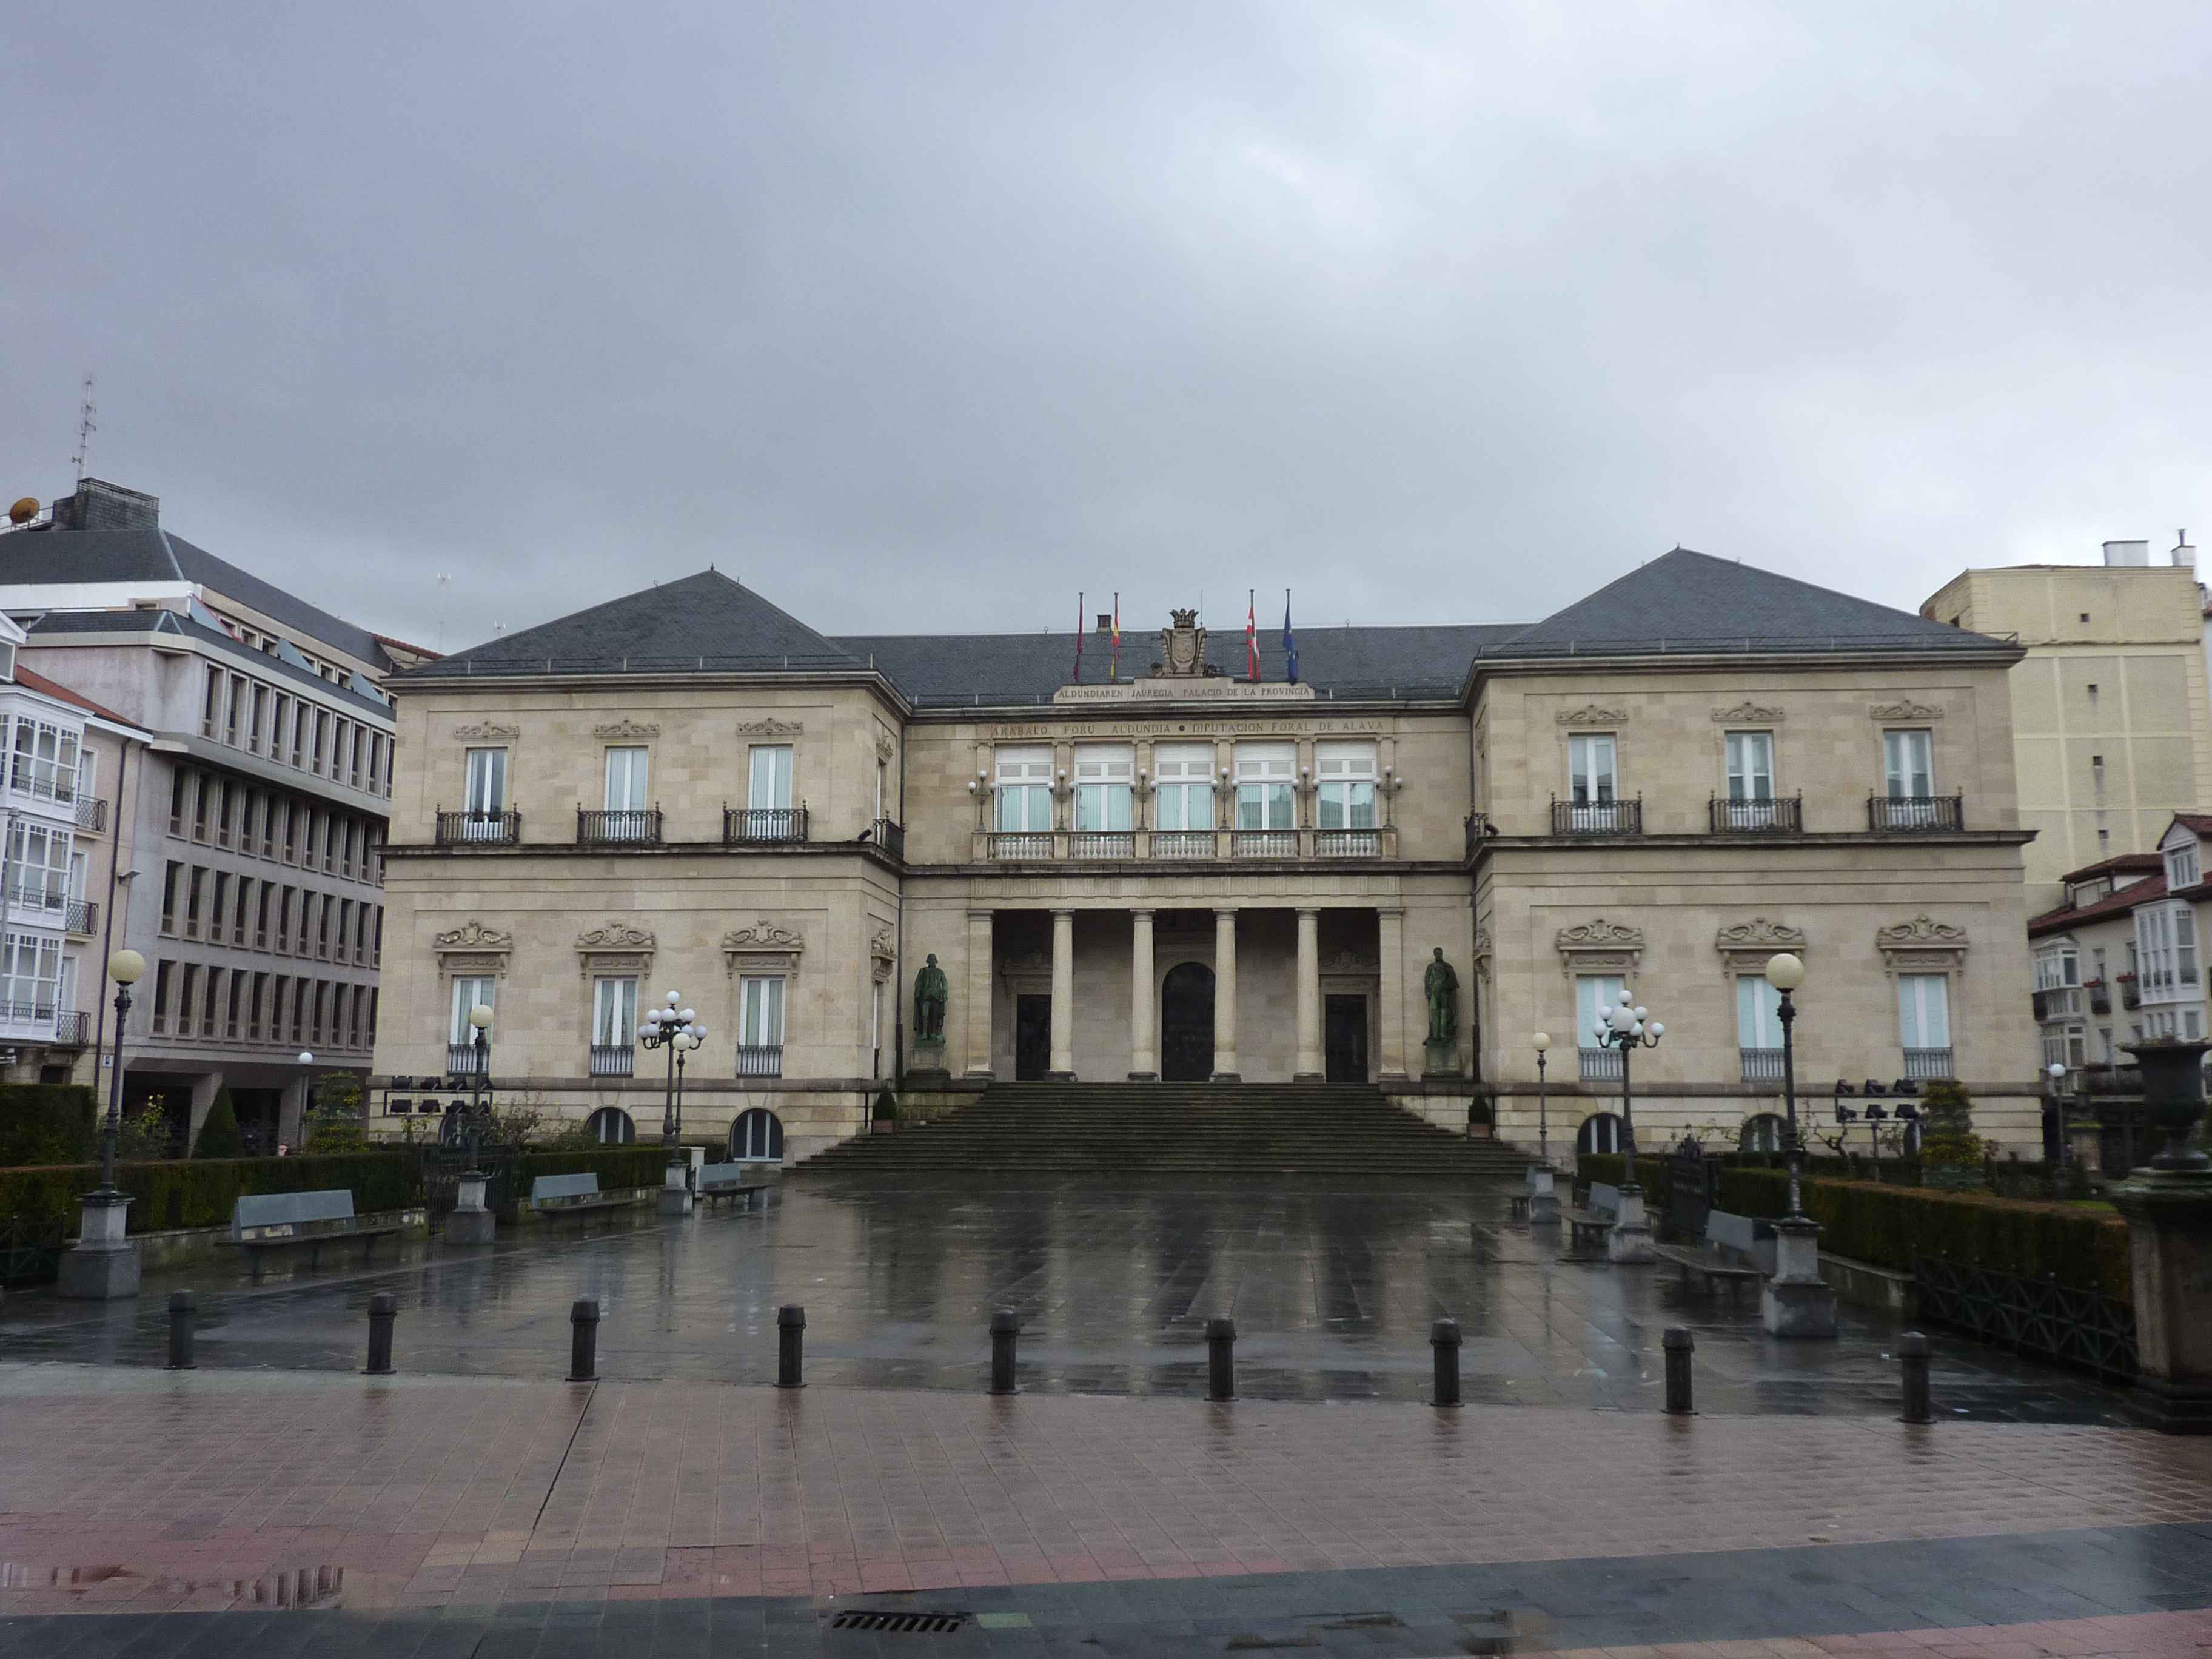 Plaza De La Provincia De Vitoria en Images